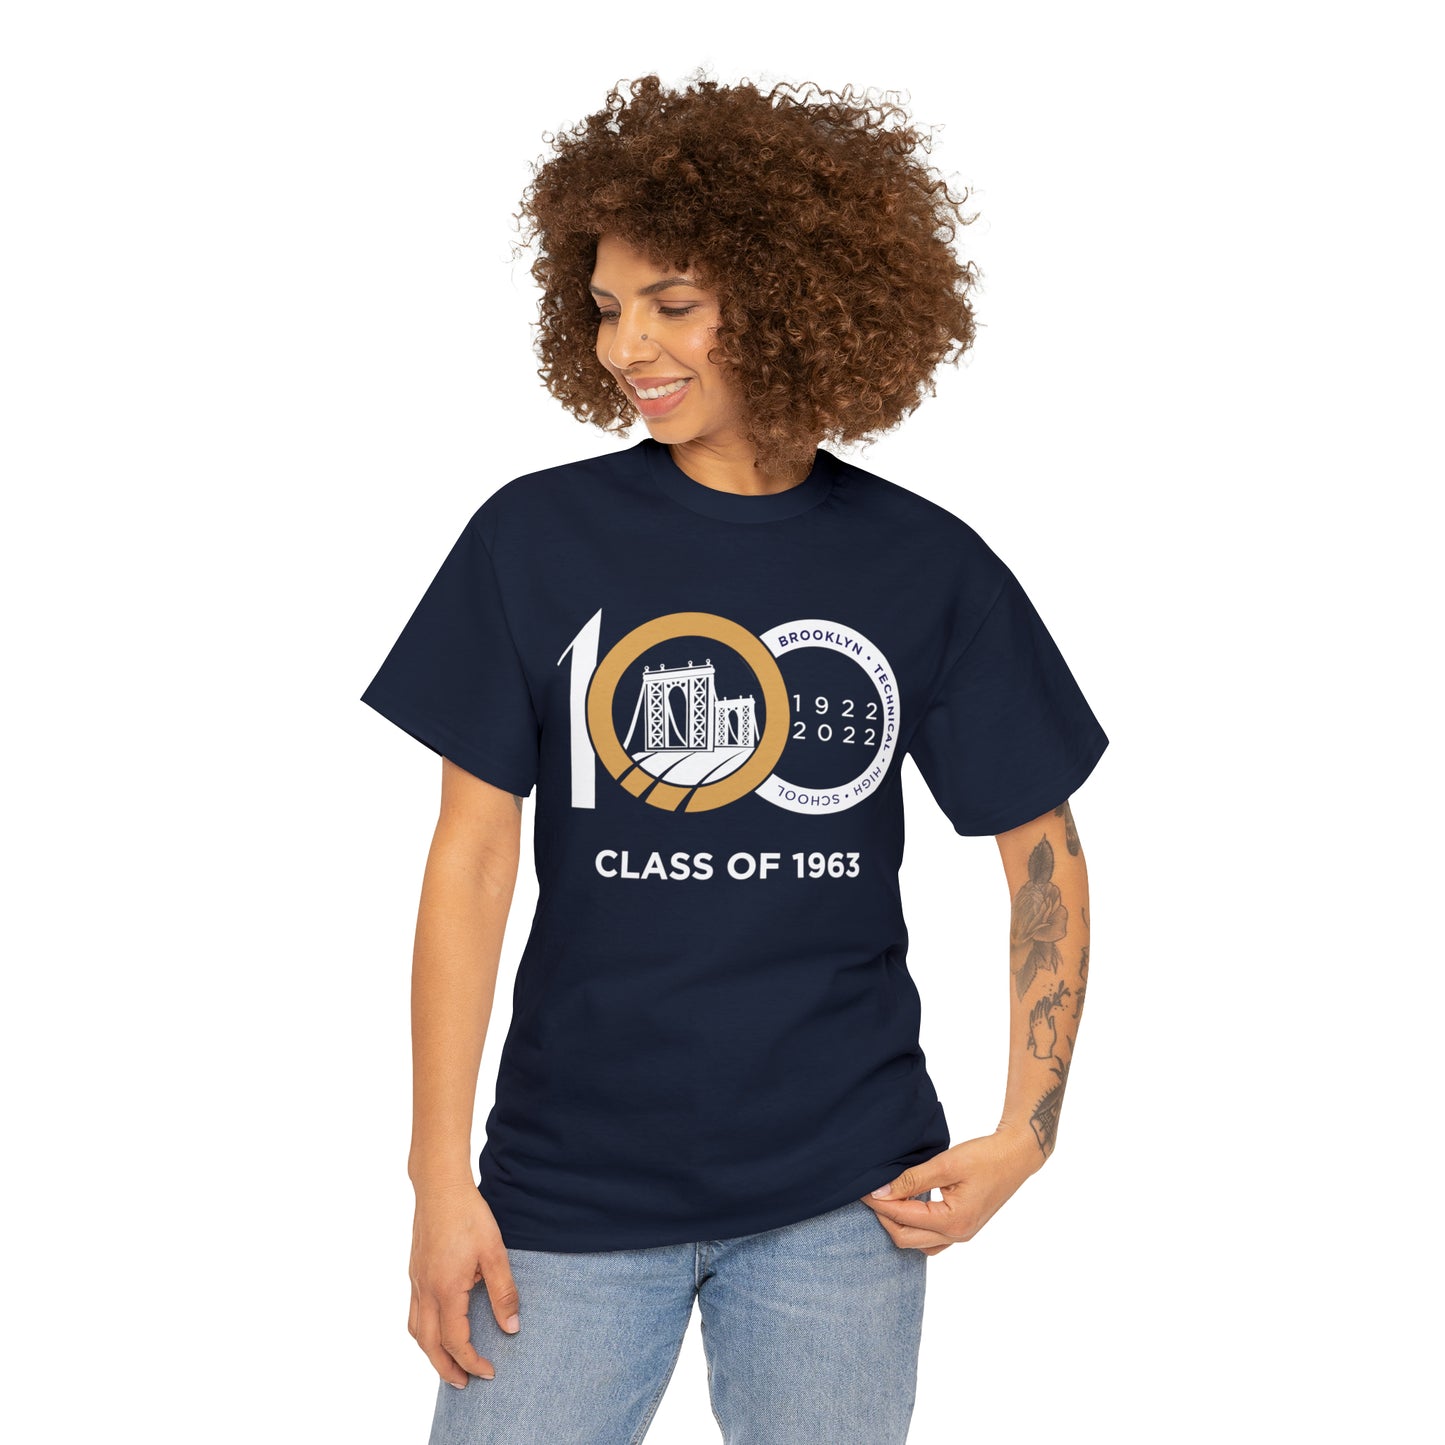 Centennial - Men's Heavy Cotton T-Shirt - Class Of 1963